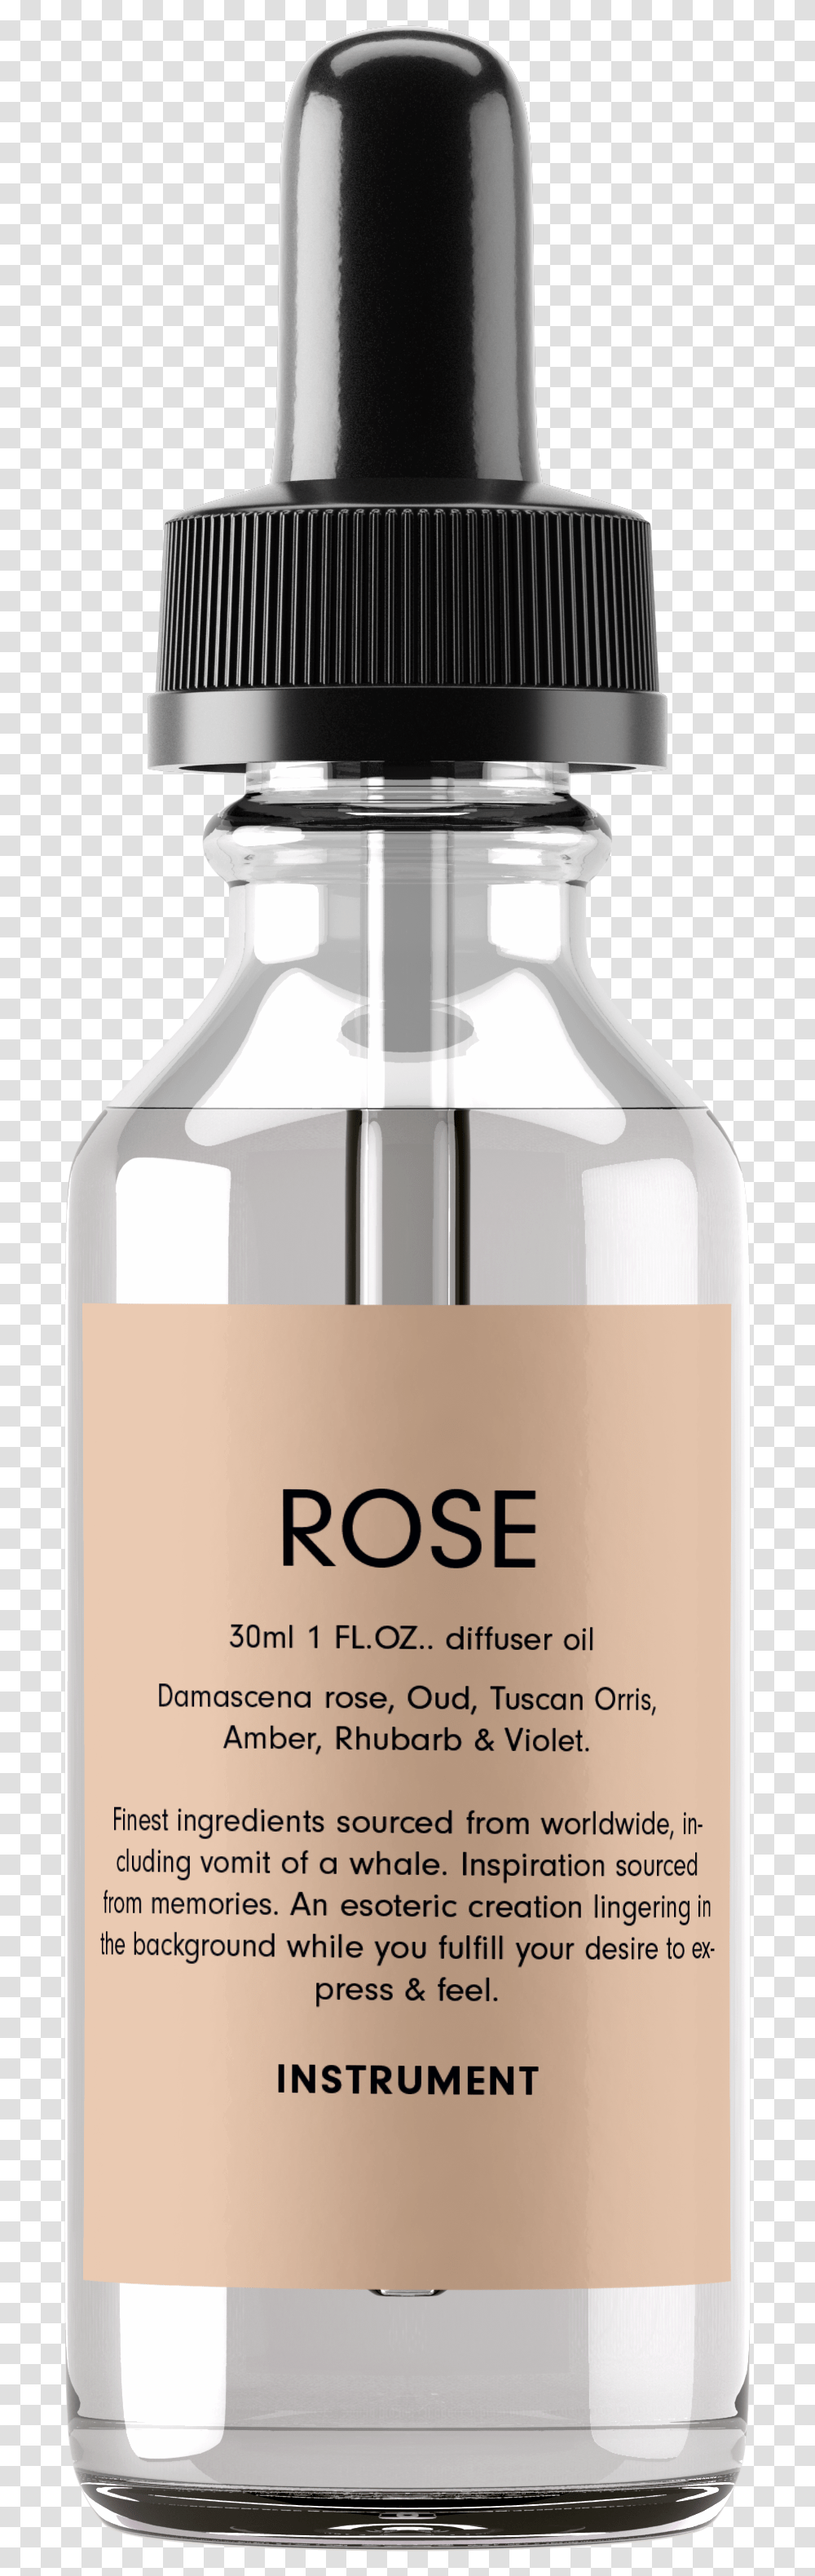 Image Of Rose Oil, Bottle, Beverage, Alcohol, Label Transparent Png